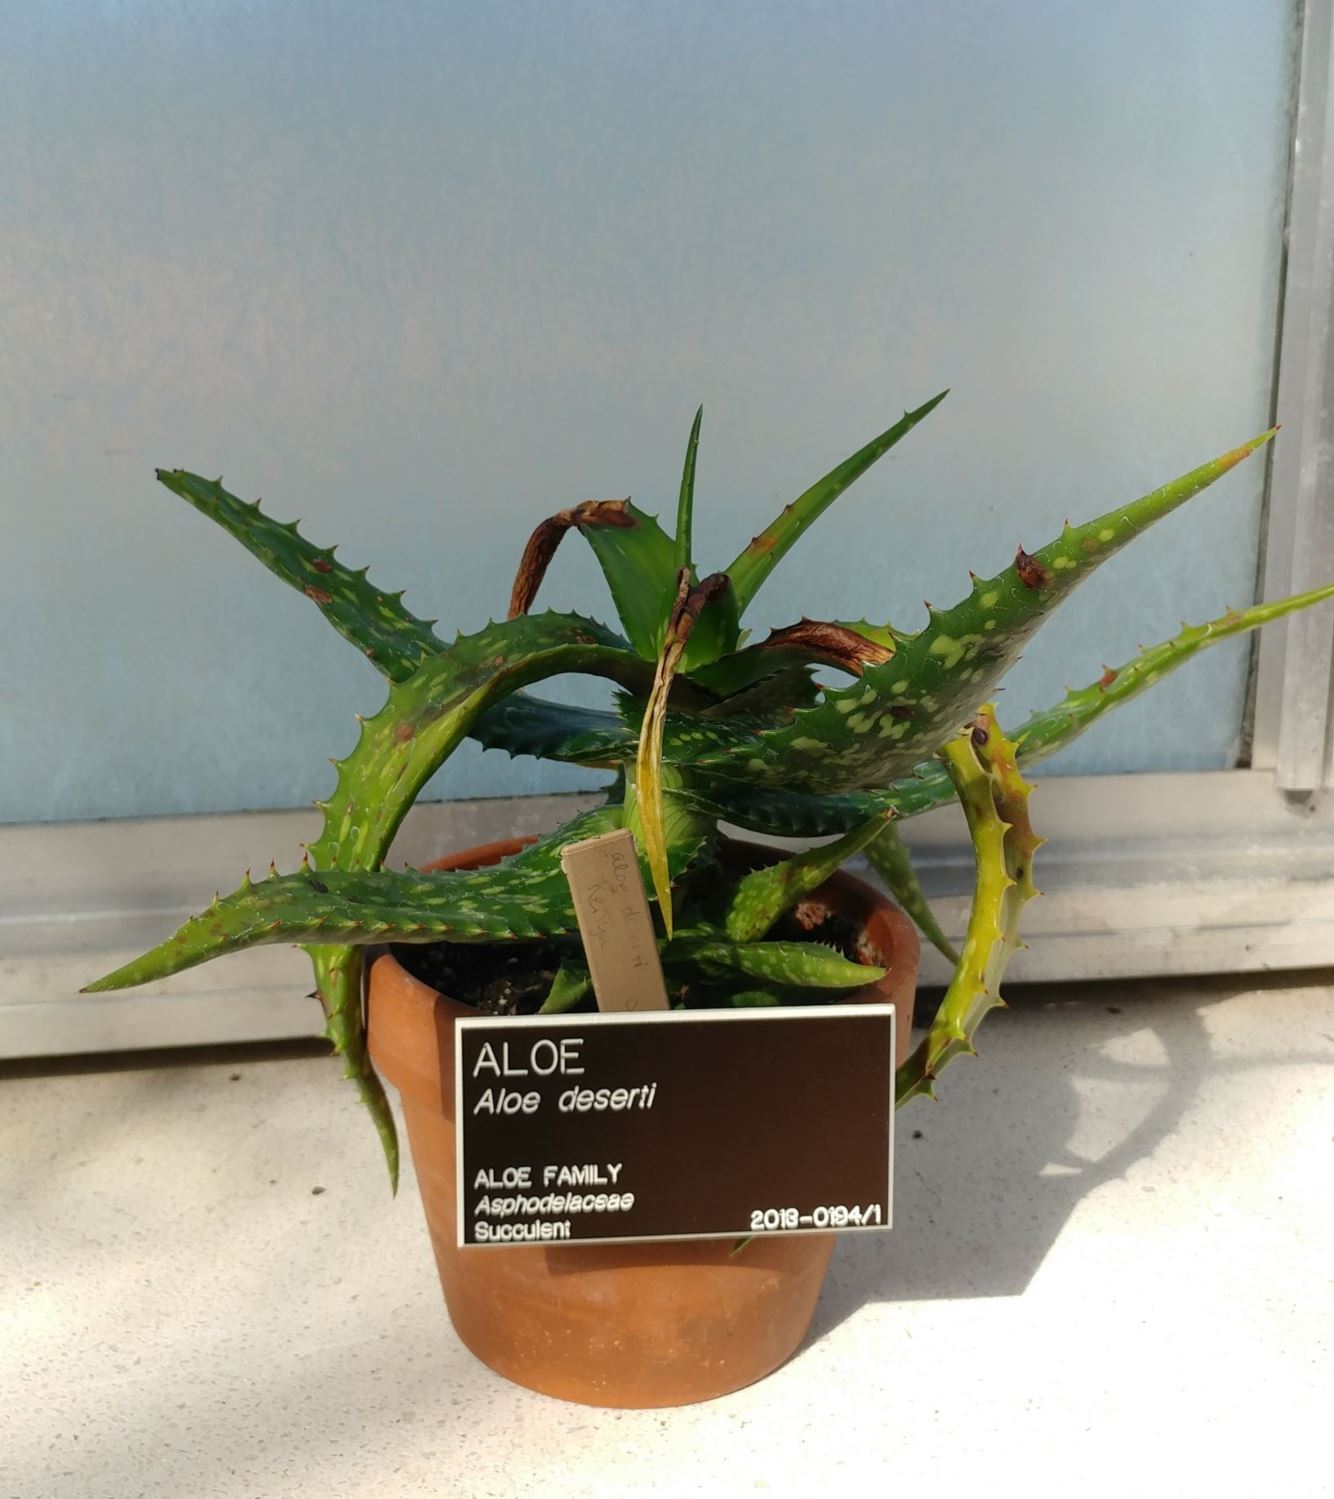 Aloe deserti - aloe